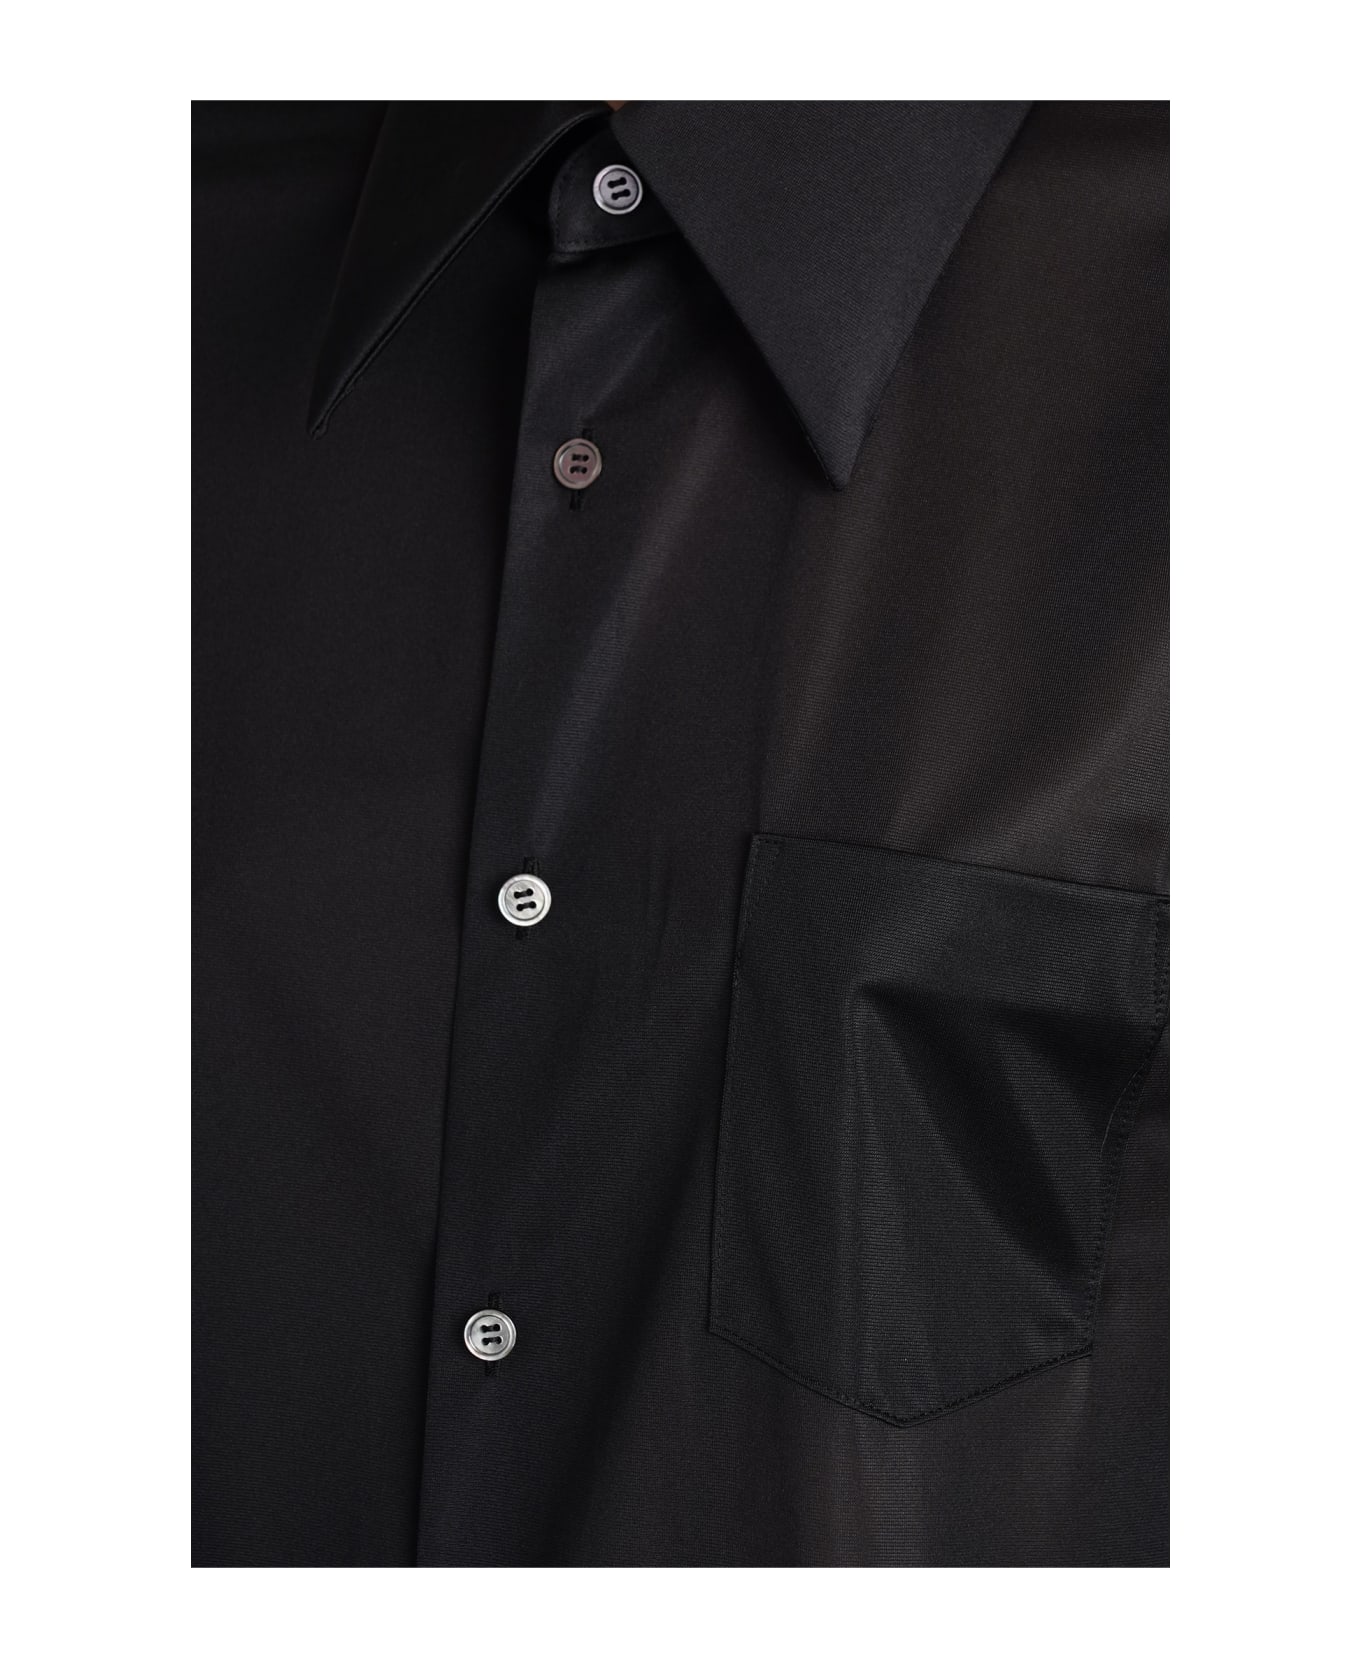 Comme des Garçons Shirt In Black Polyester - black